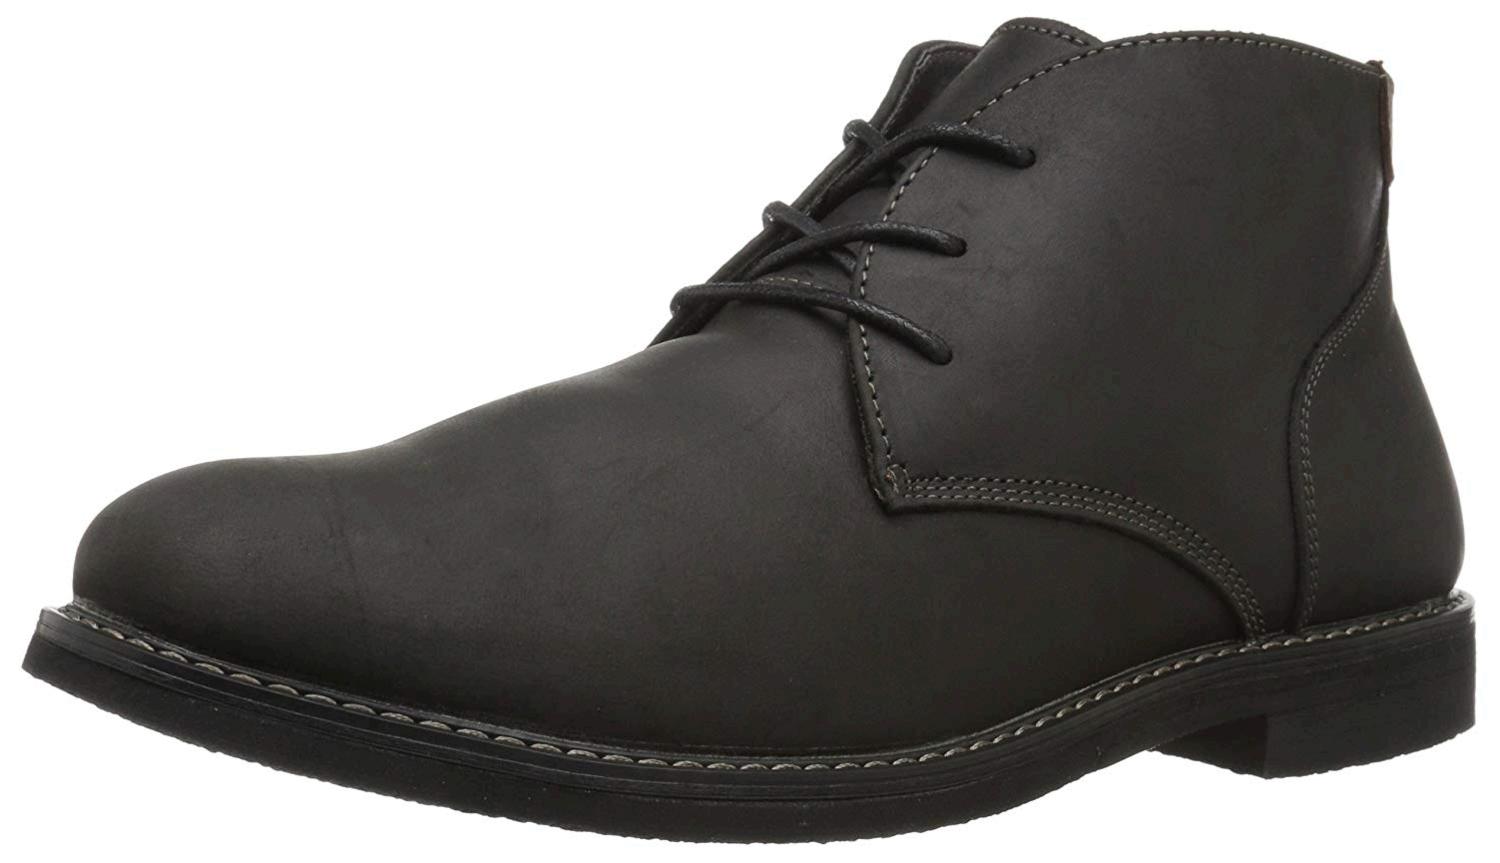 Nunn Bush Men's Lancaster Plain Toe Chukka Boot, Black, Size 10.5 WD1x ...